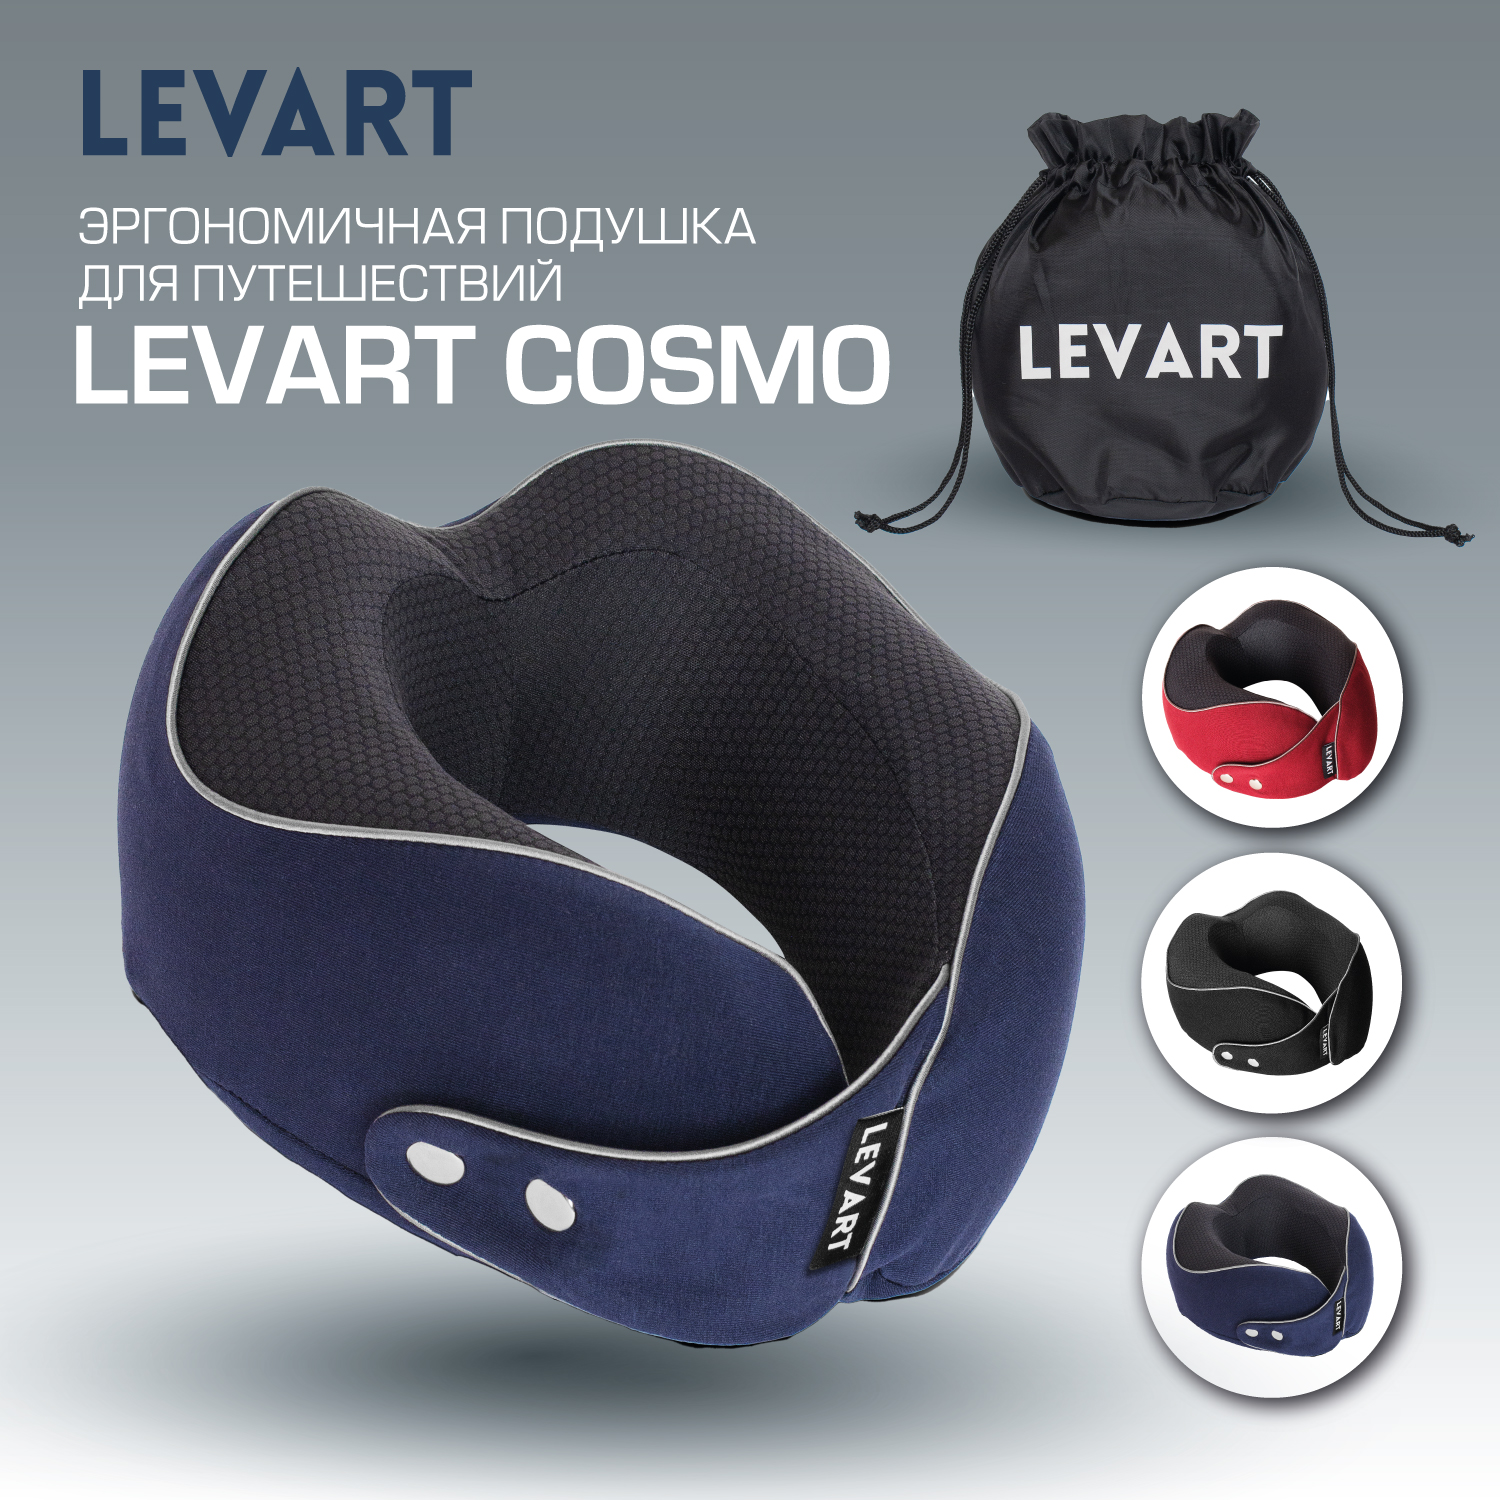 Ортопедическая подушка для путешествий Levart Cosmo, синий - купить в Москве, цены на Мегамаркет